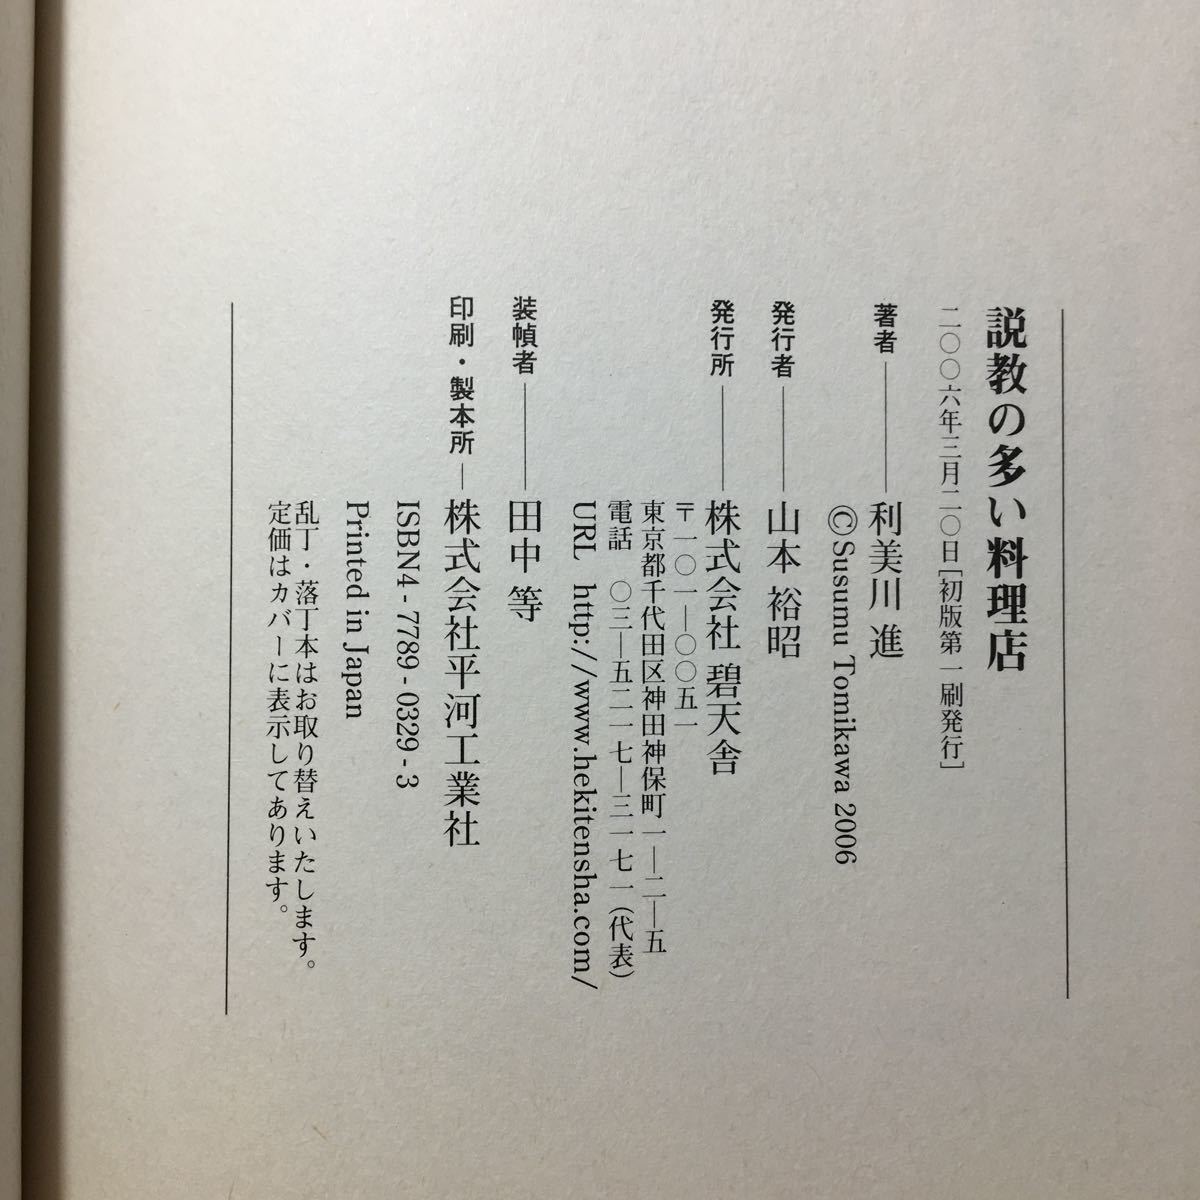 zaa-510♪説教の多い料理店 　 利美川 進 (著)　碧天舎 単行本 2006/3/1_画像6